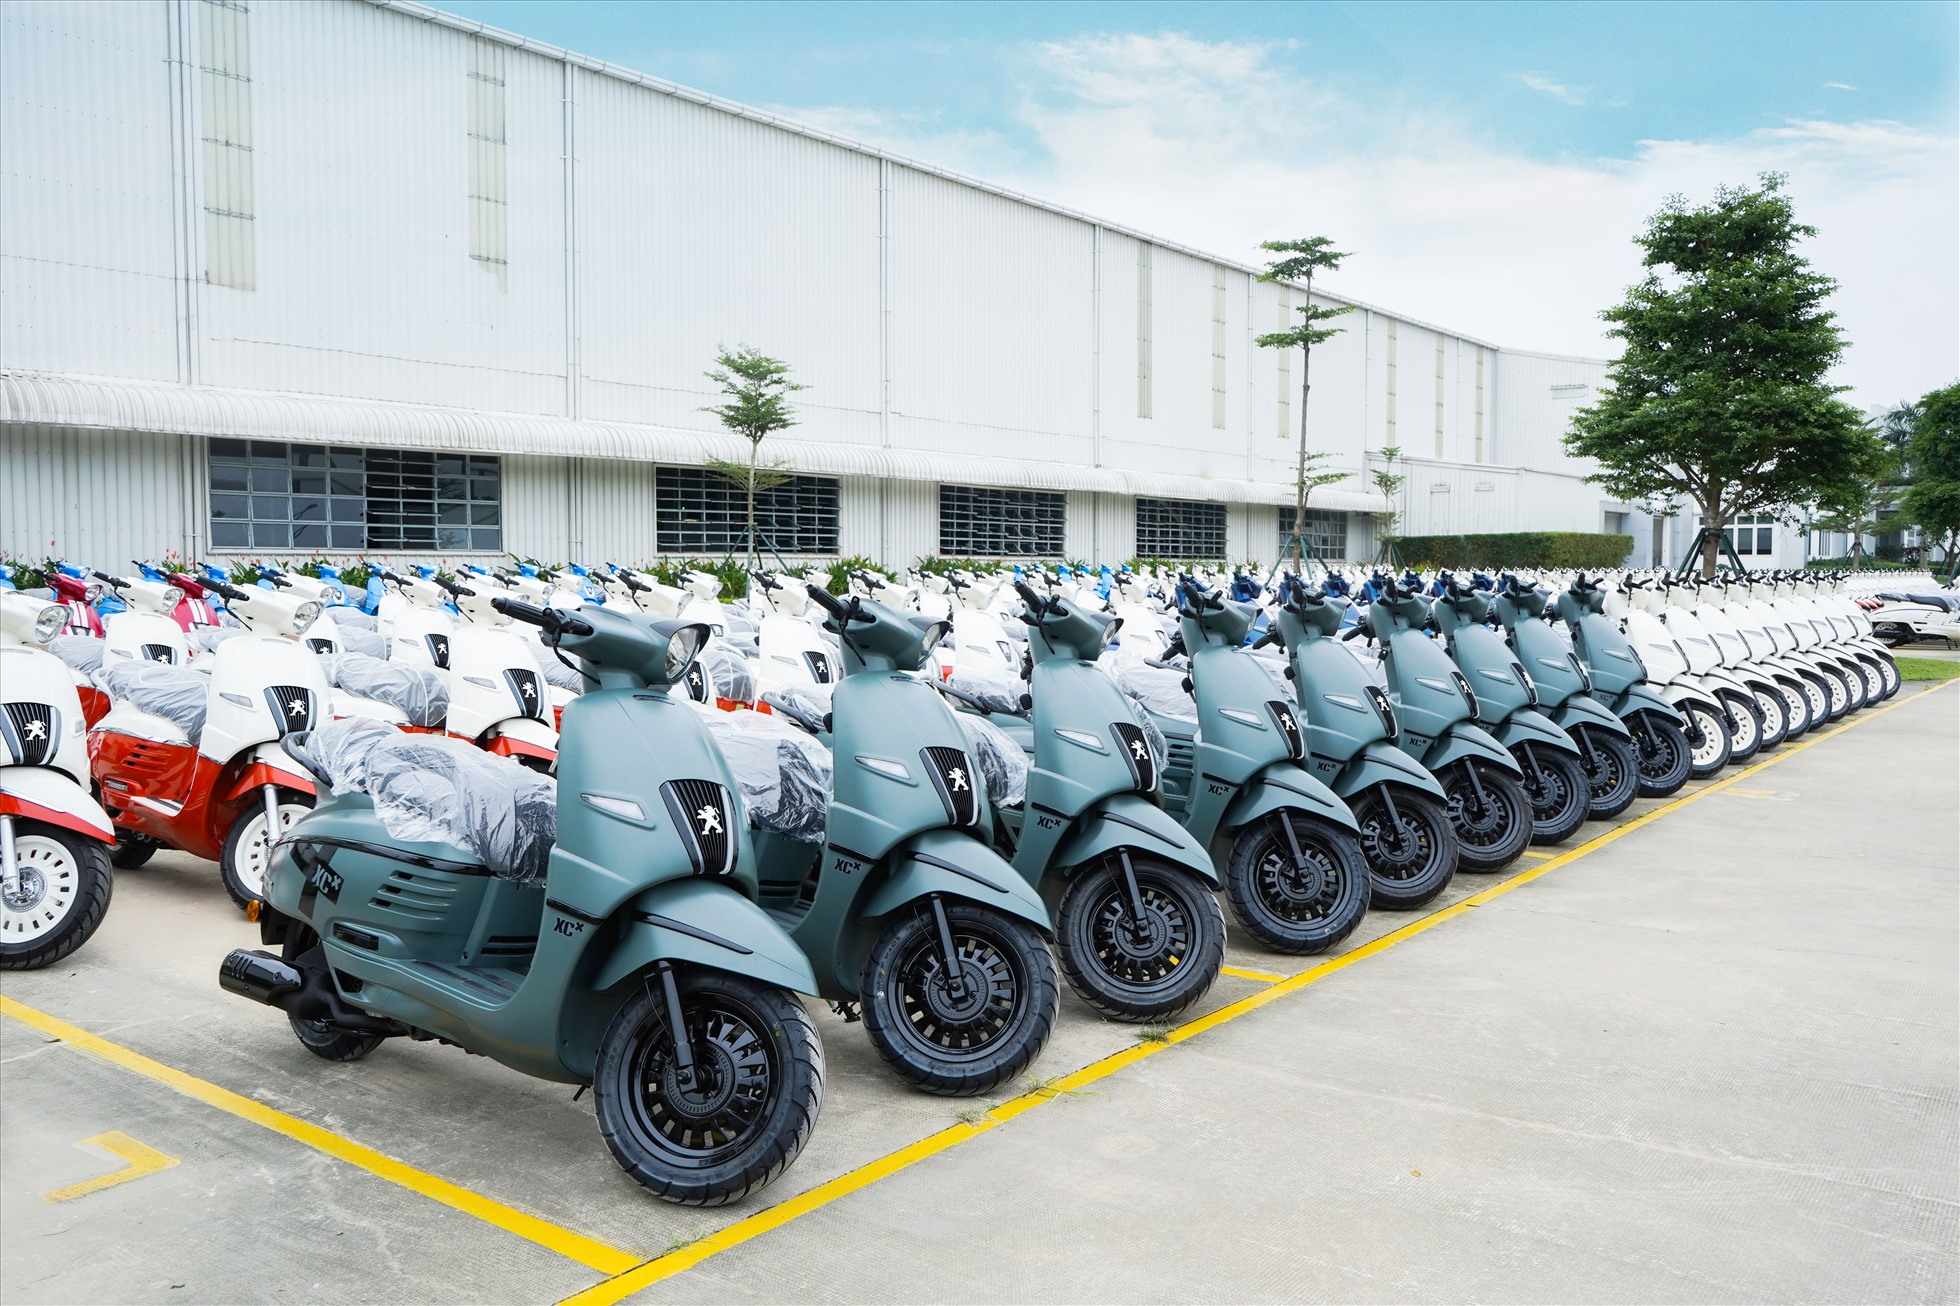 Được sản xuất, lắp ráp tại nhà máy THACO Motorcycle (thuộc Khu công nghiệp THACO Chu Lai, Quảng Nam)